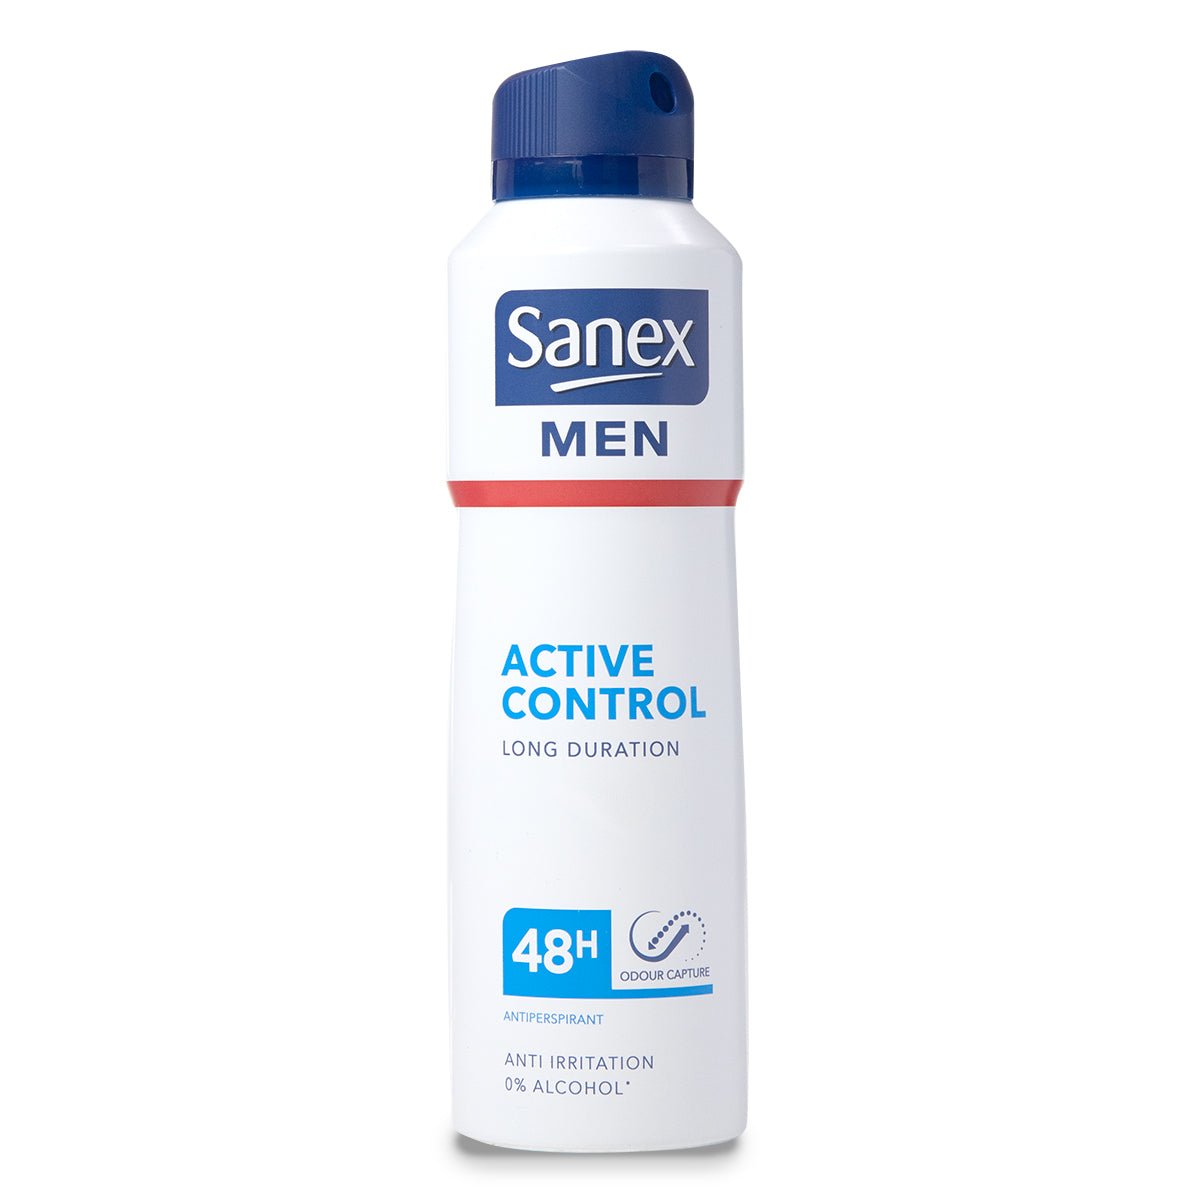 Sanex Deo Men Active Control - Intamarque 8718951323025